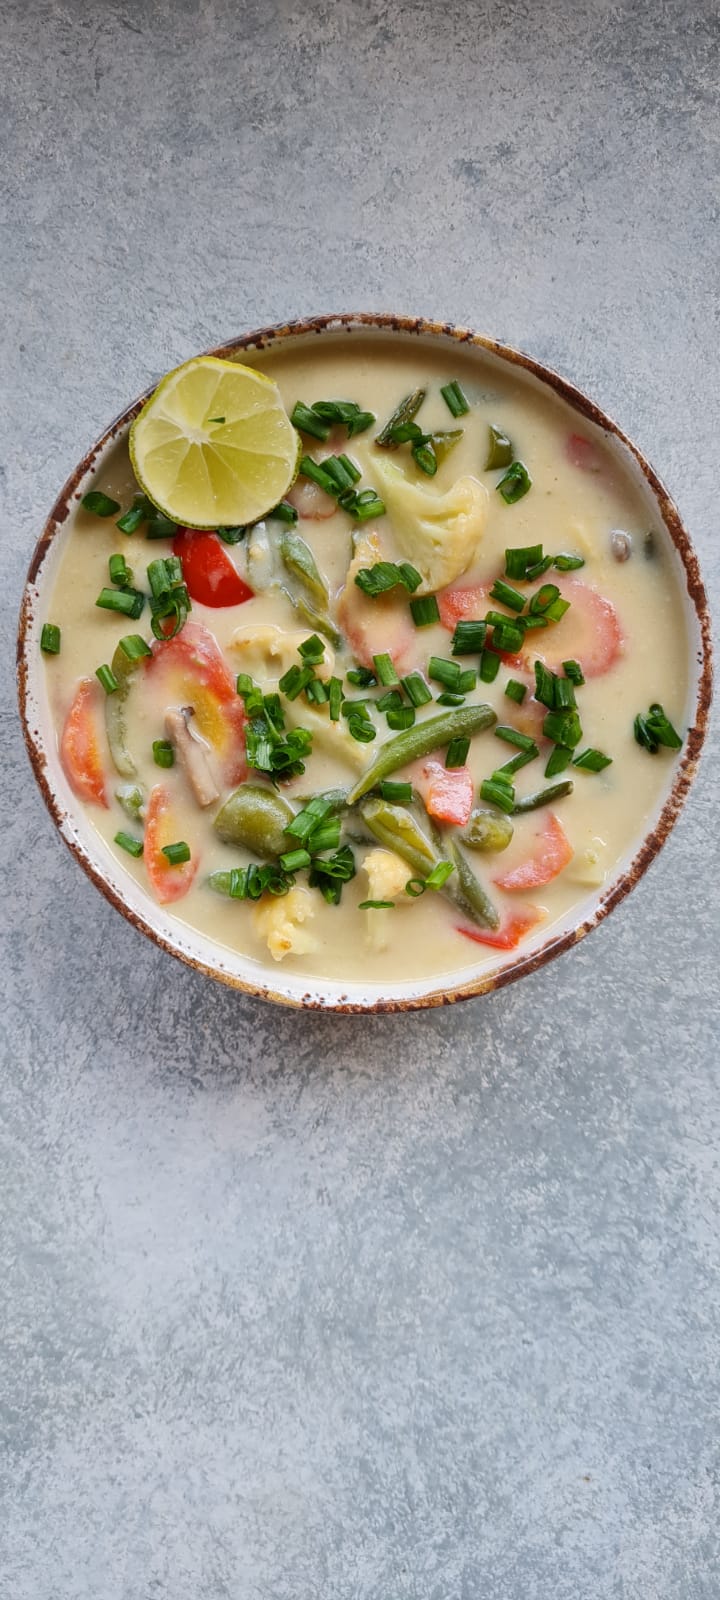 सब्जी नारियल का सूप (सिमरुन चोपड़ा)